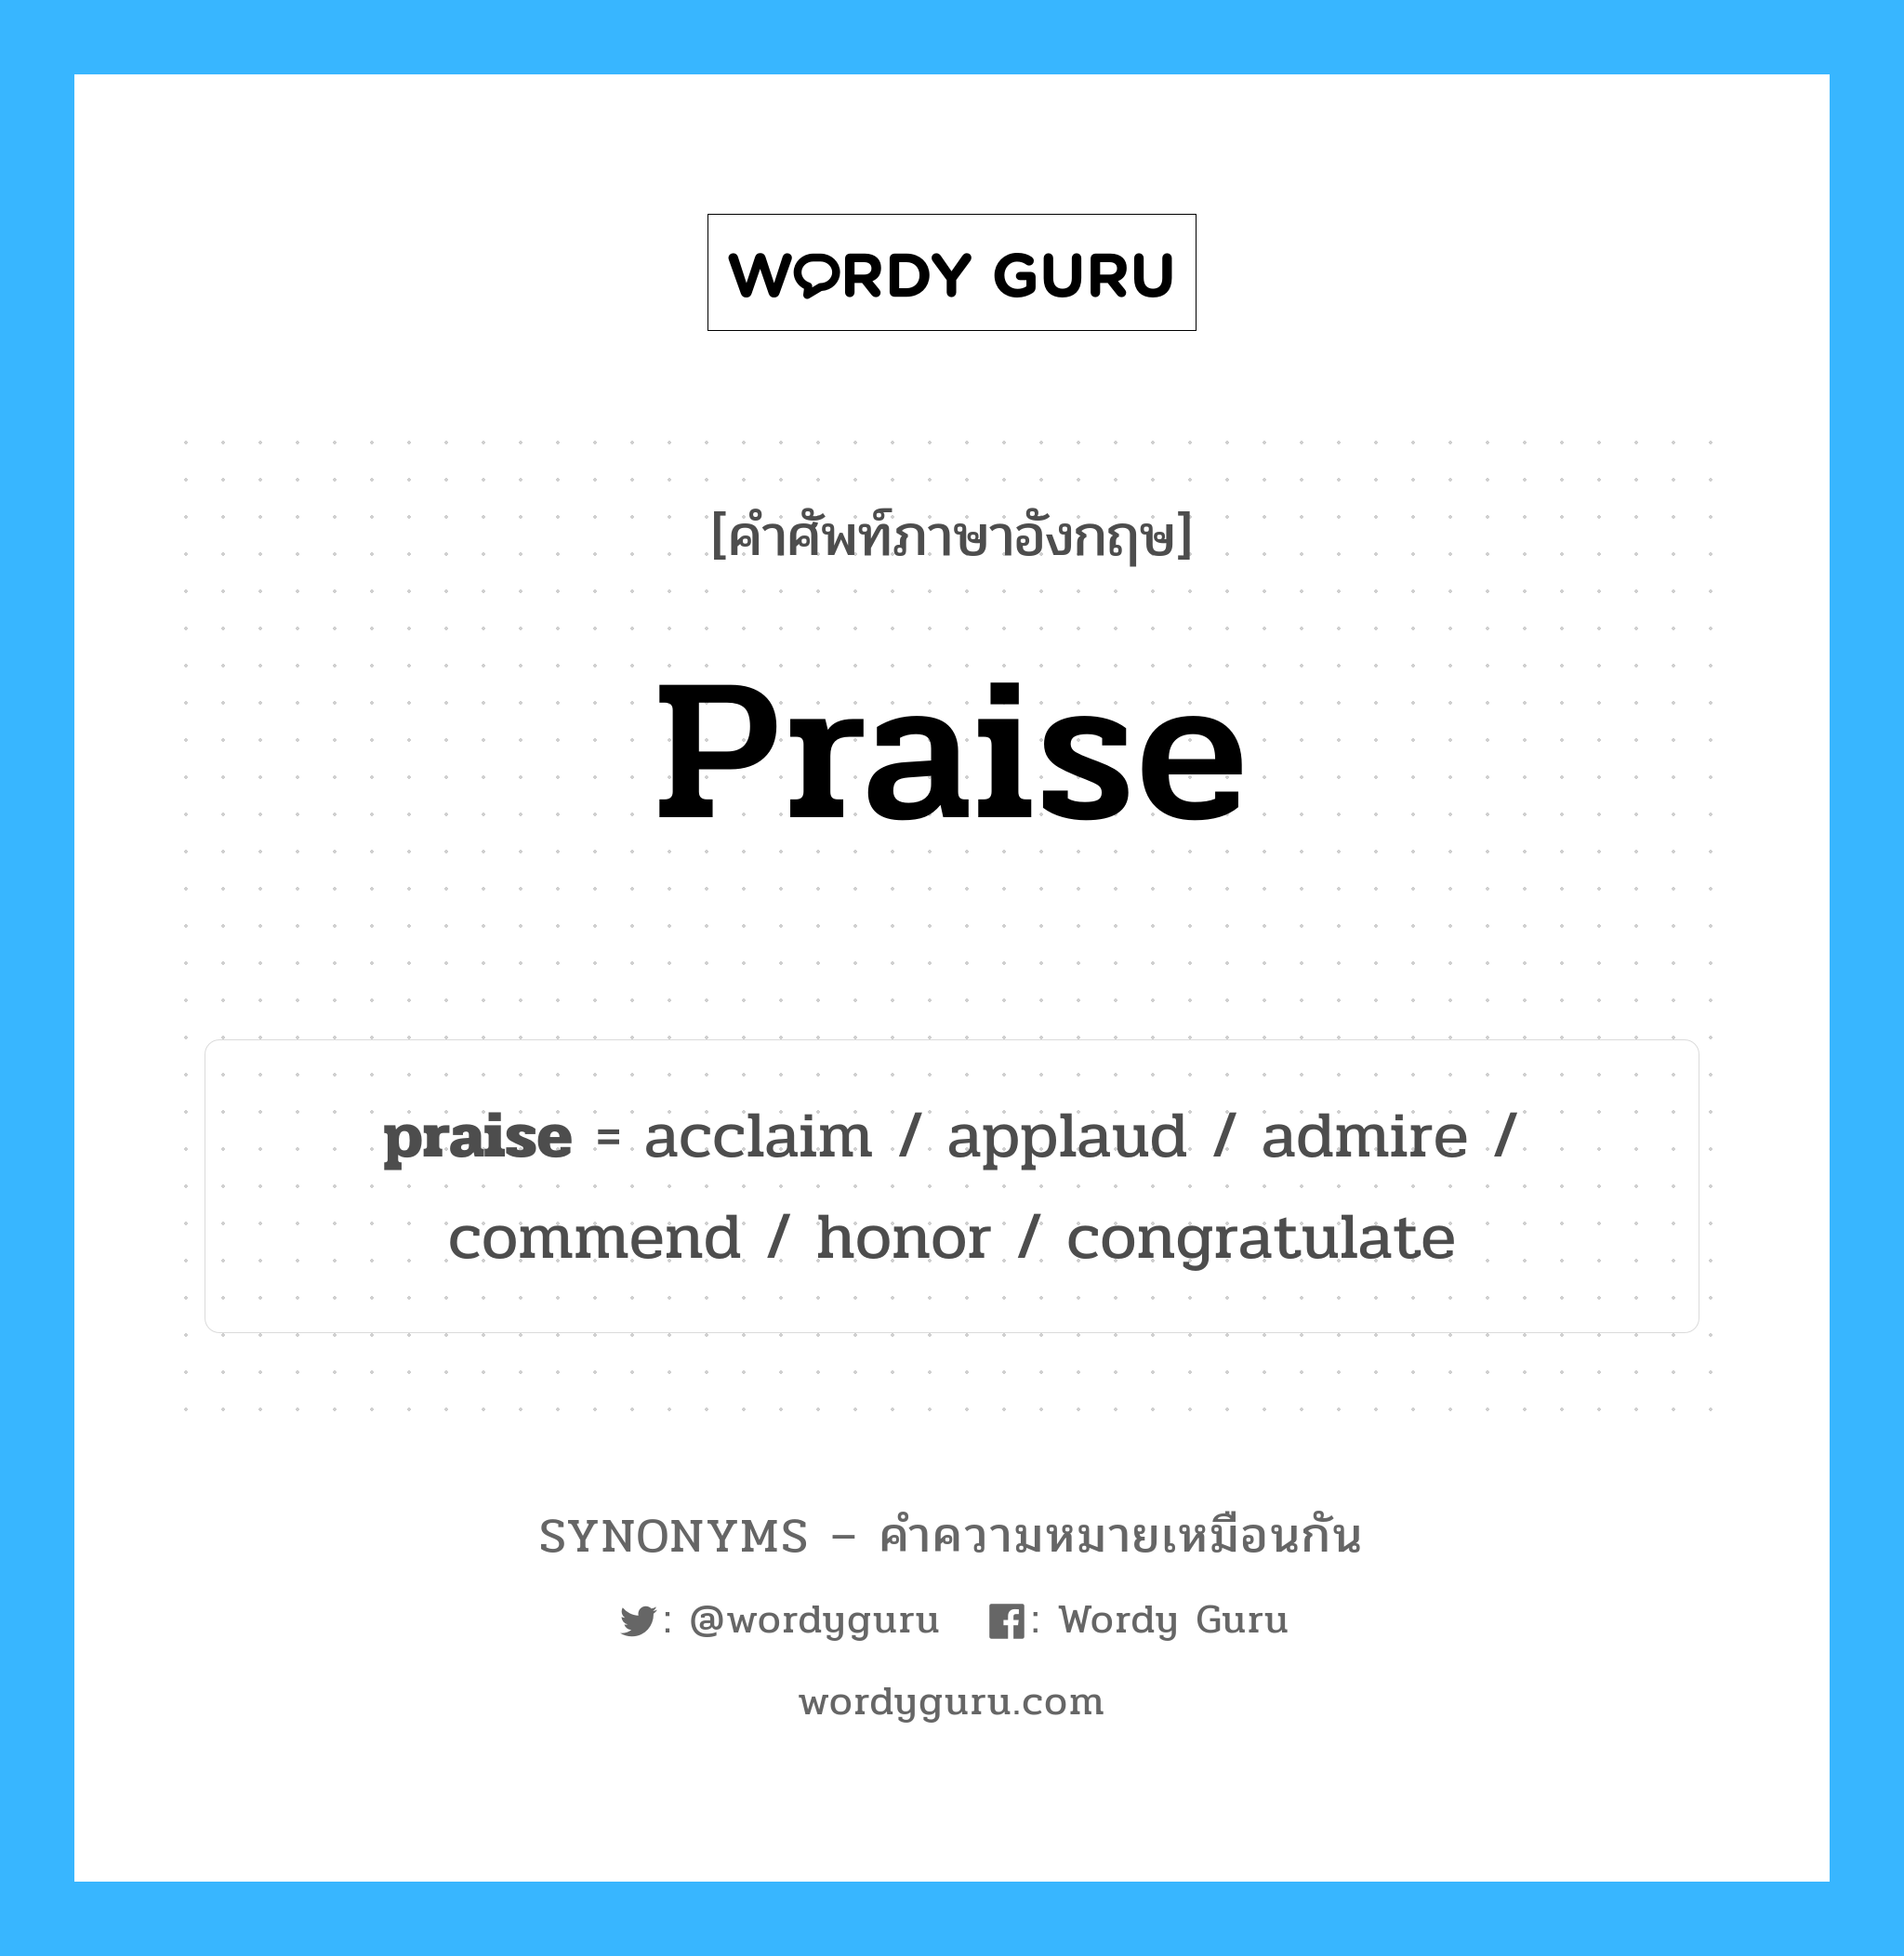 admire เป็นหนึ่งใน praise และมีคำอื่น ๆ อีกดังนี้, คำศัพท์ภาษาอังกฤษ admire ความหมายคล้ายกันกับ praise แปลว่า ชื่นชม หมวด praise